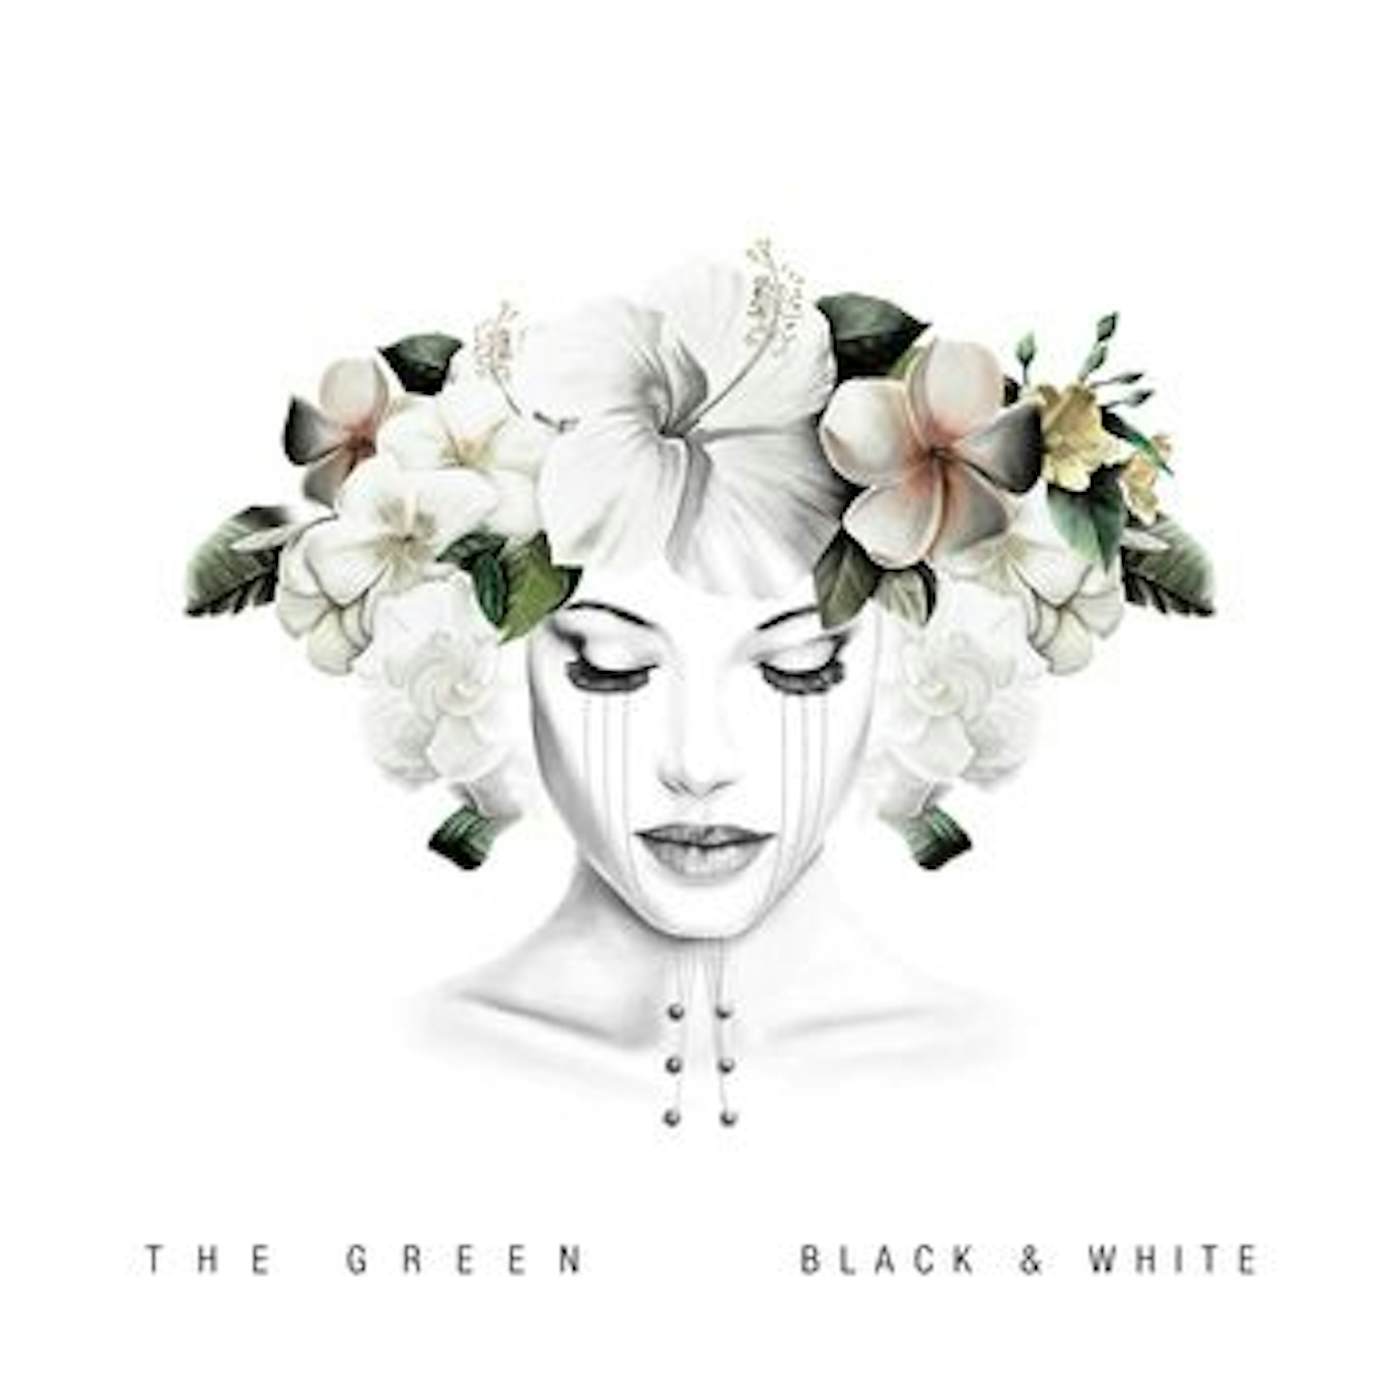 The Green BLACK & WHITE CD